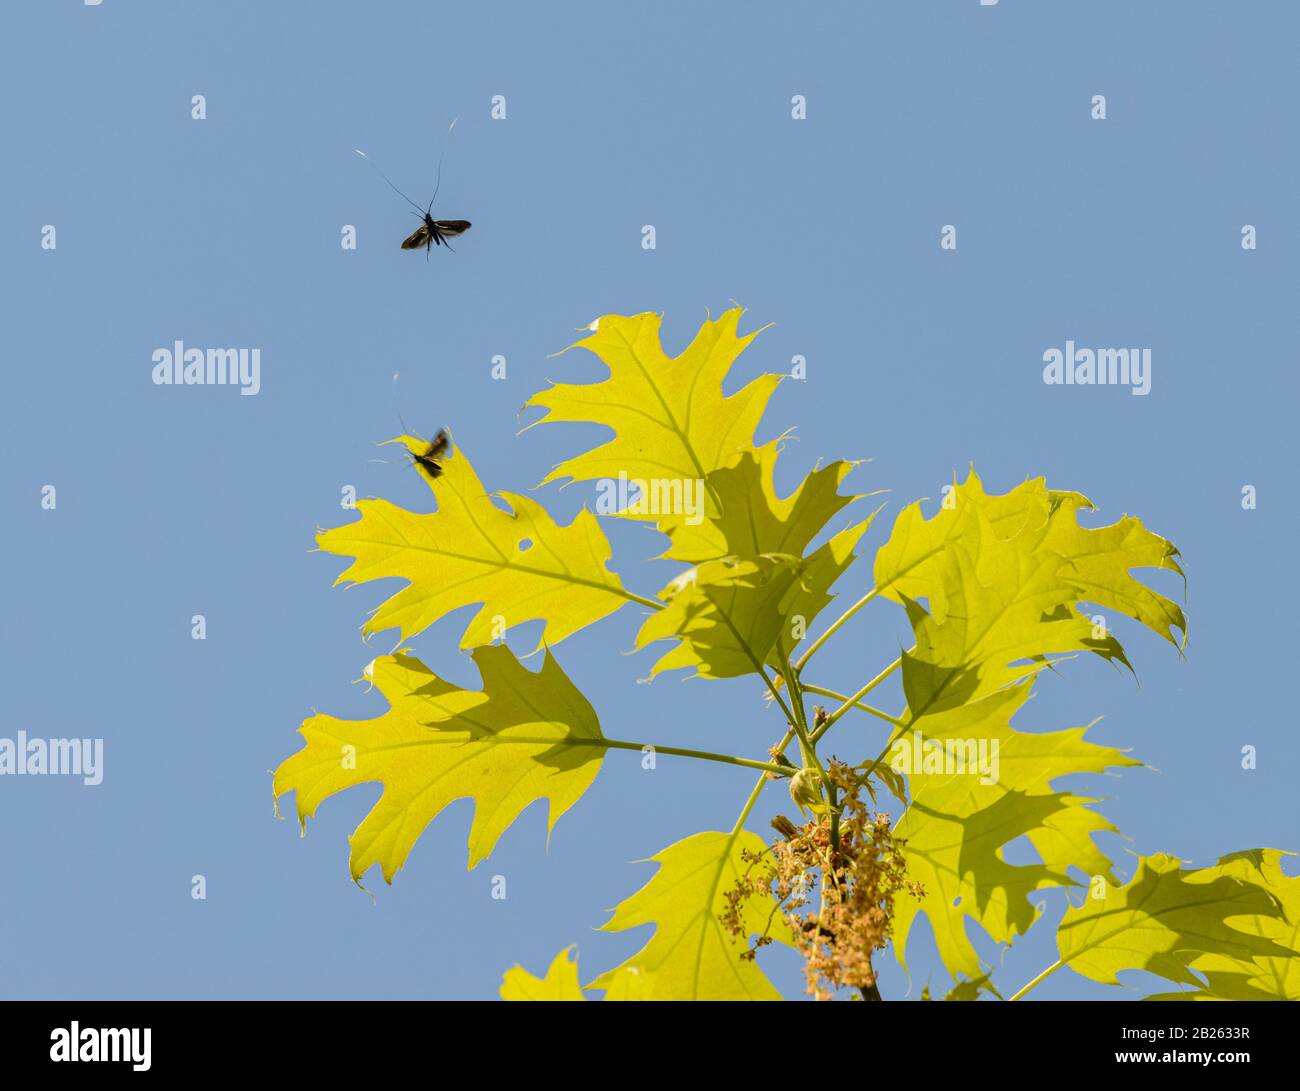 insectes à ailes noires avec de longues antennes qui volent autour de feuilles de chêne vert contre le ciel bleu, sauvage Banque D'Images